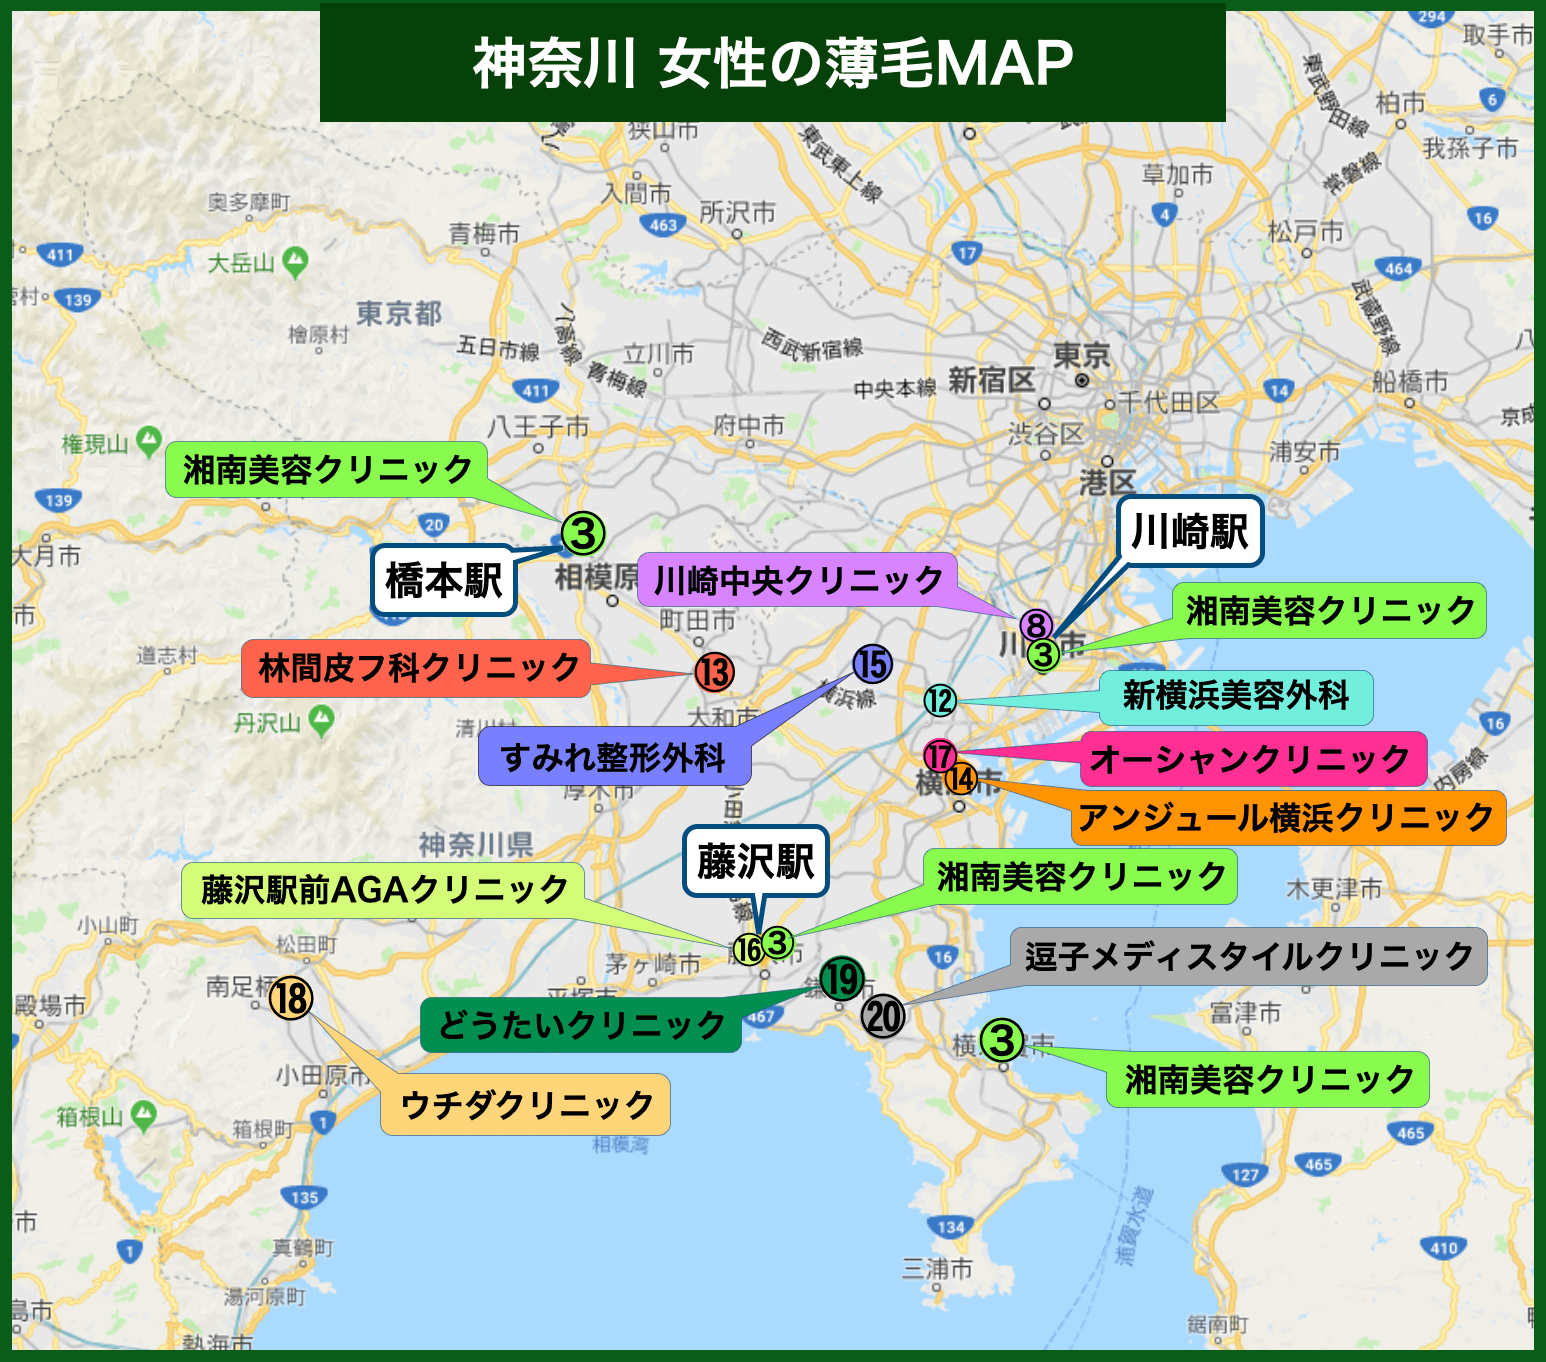 神奈川 女性の薄毛MAP